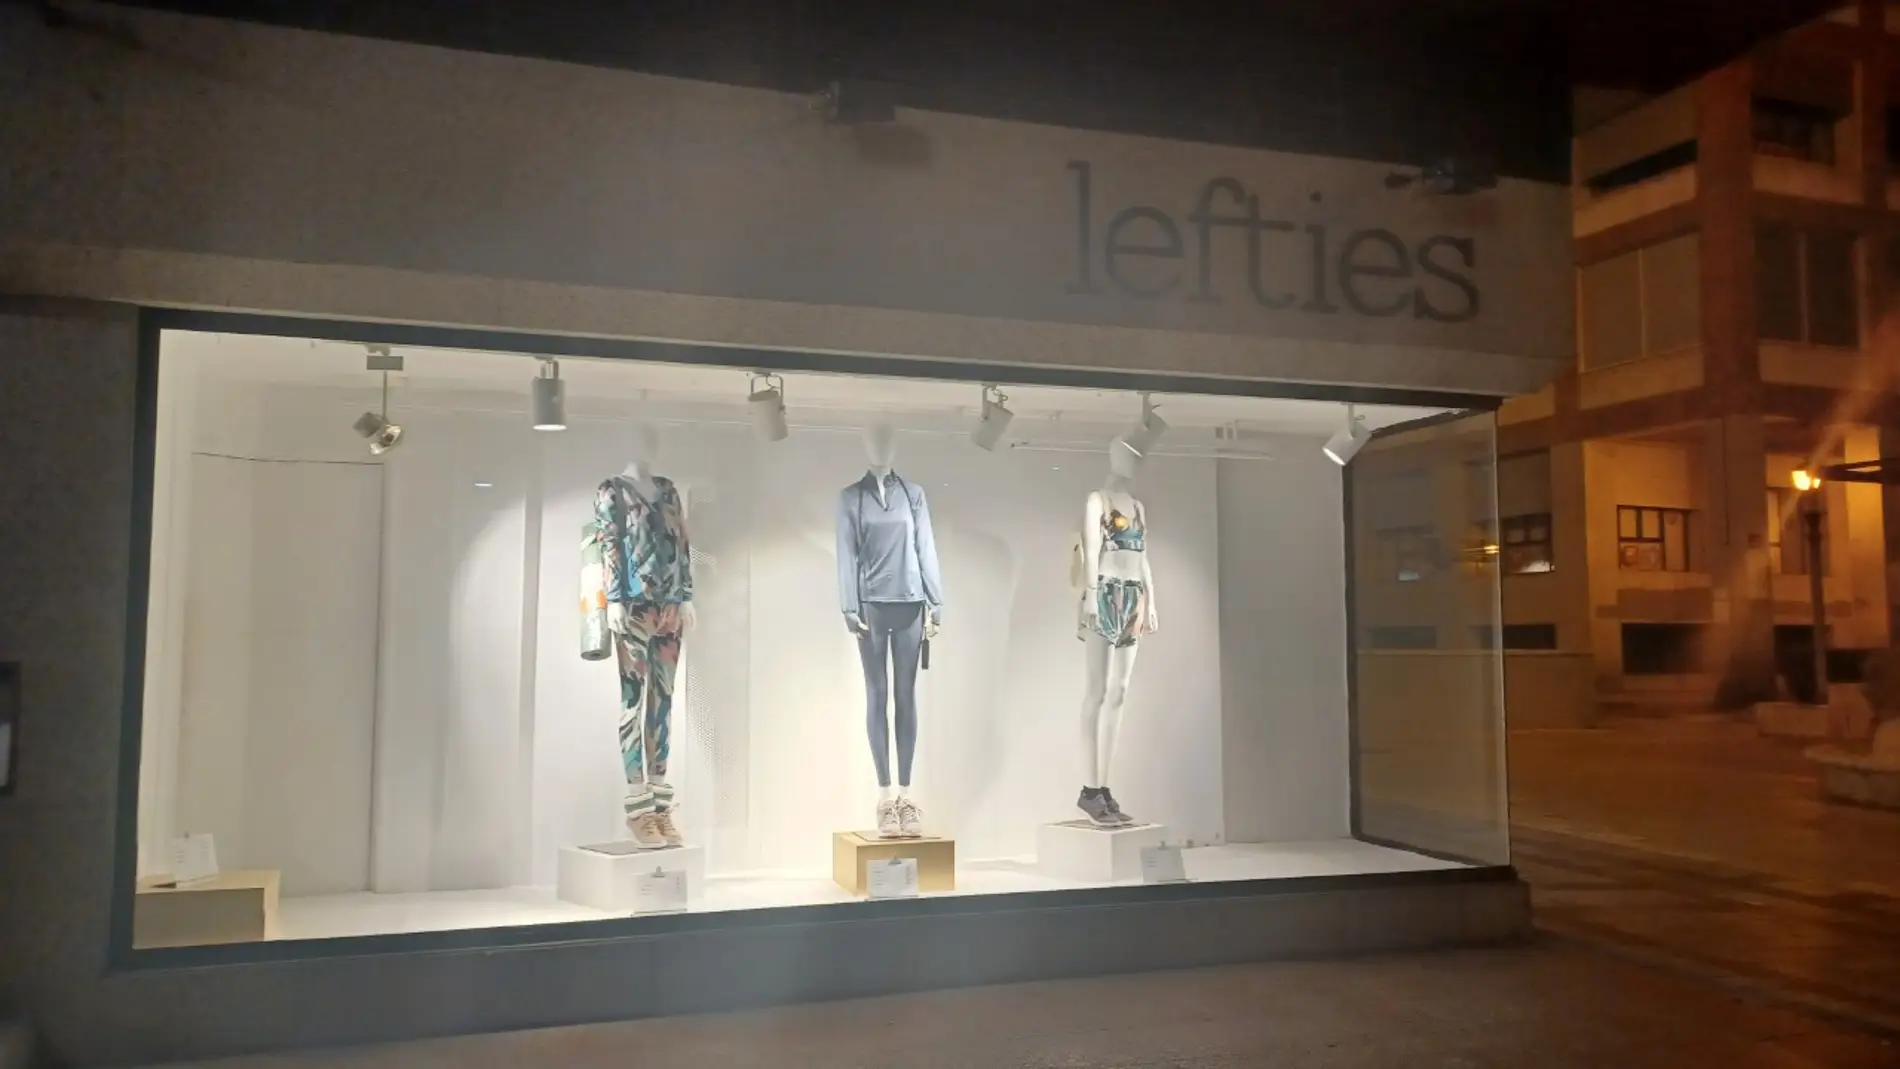 Lefties cerrará su tienda en Palencia el 24 de enero